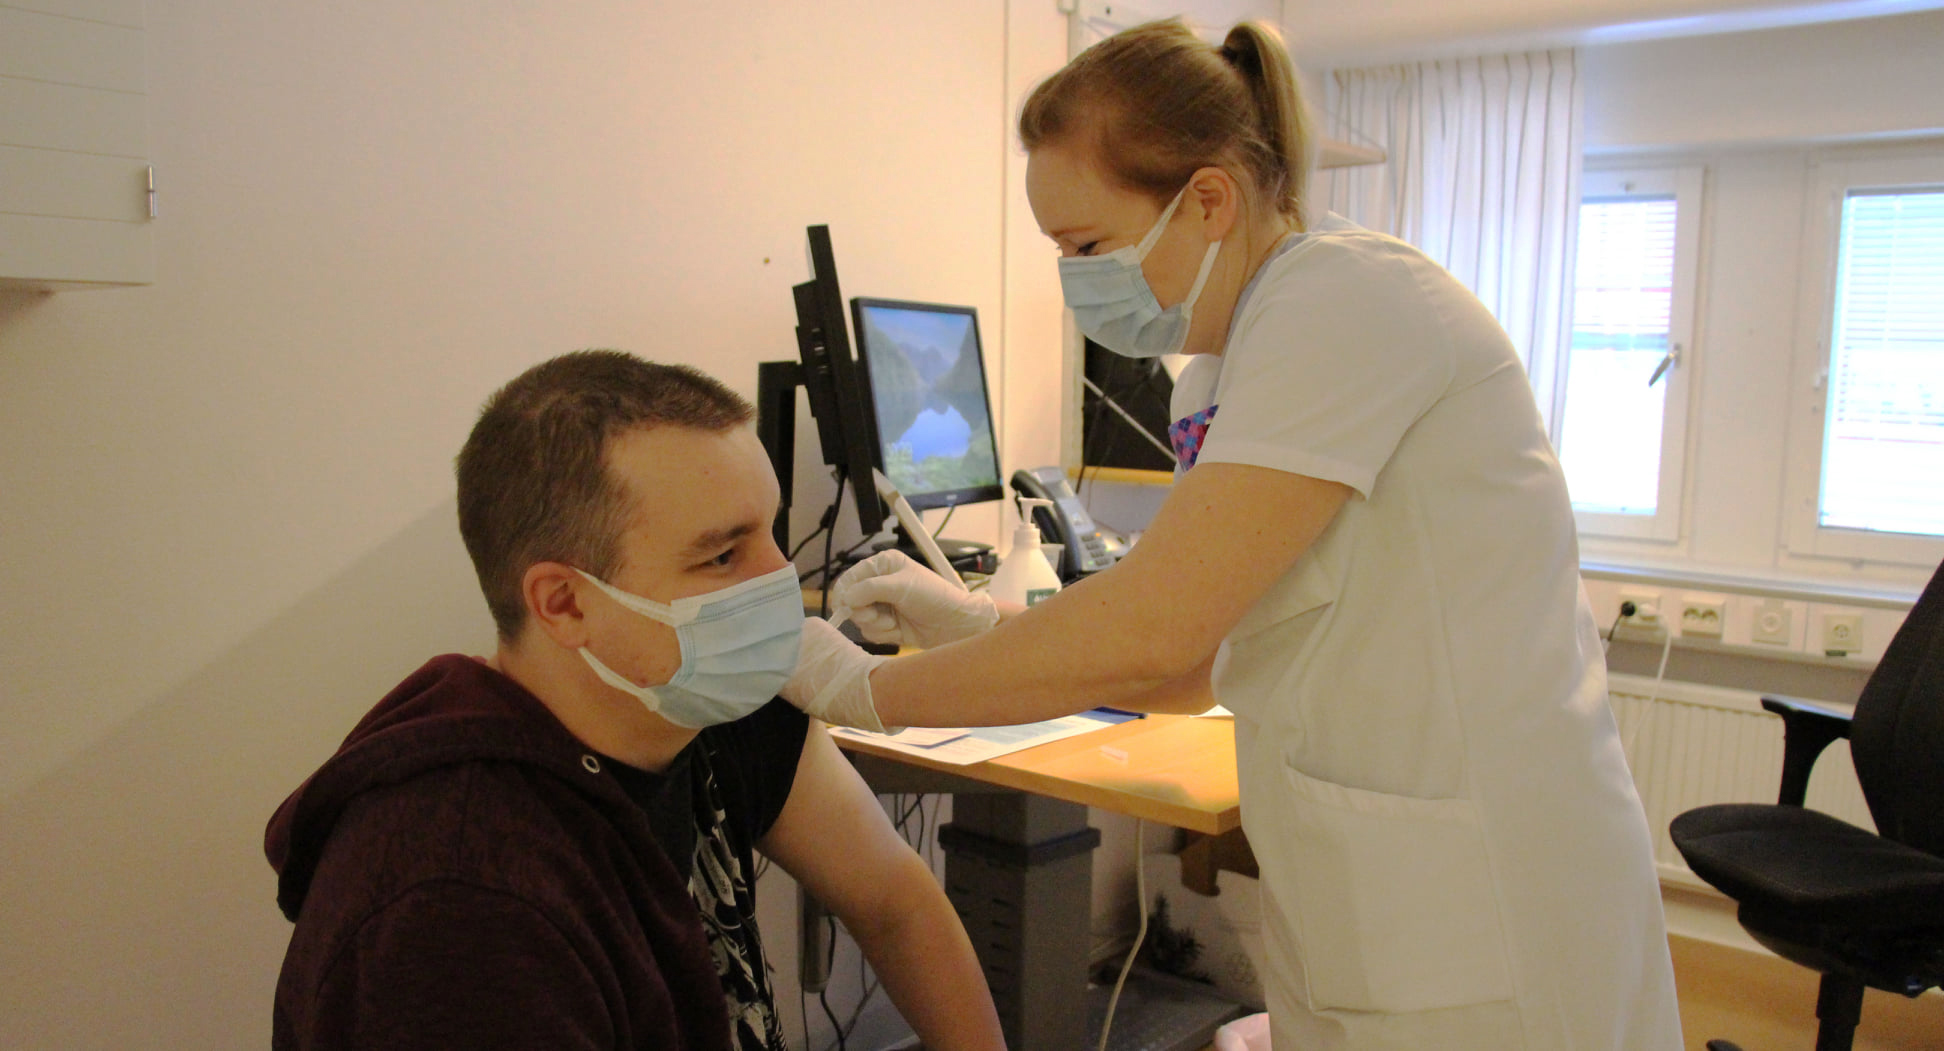 En kvinnlig sköterska i vita kläder tar en spruta på en yngre man men munskydd